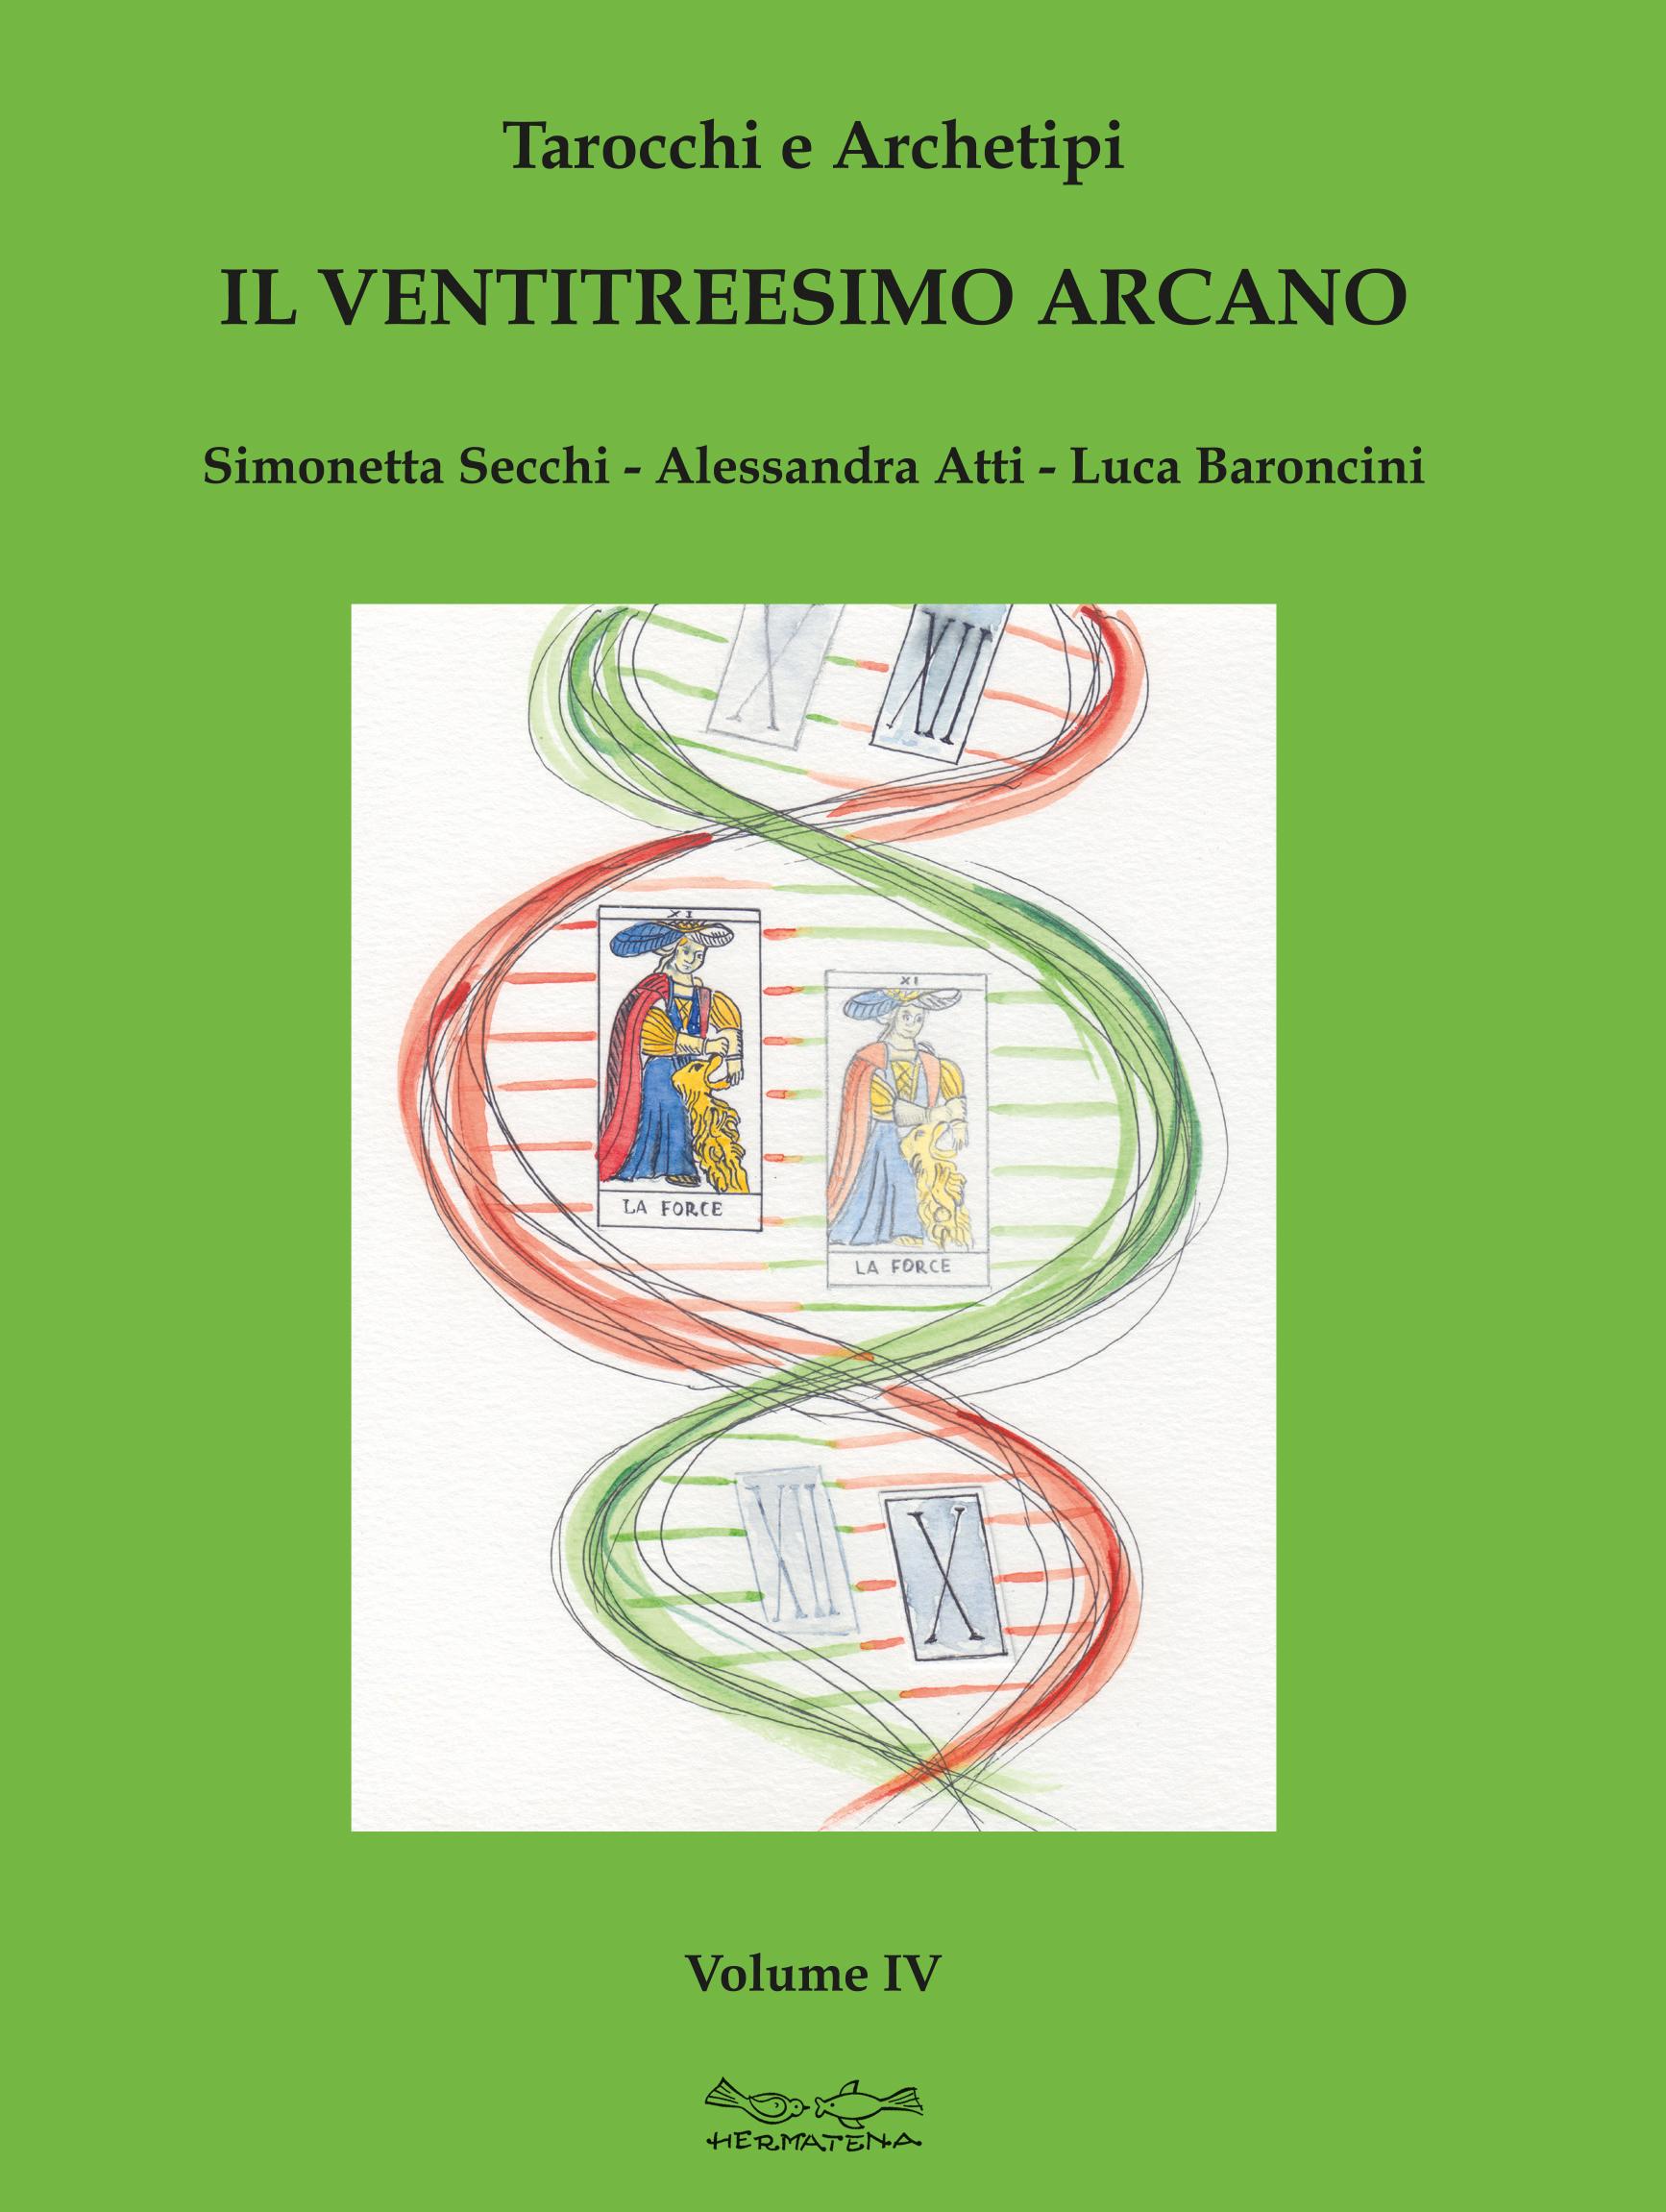 TAROCCHI E ARCHETIPI Vol. IV Il ventitreesimo Arcano